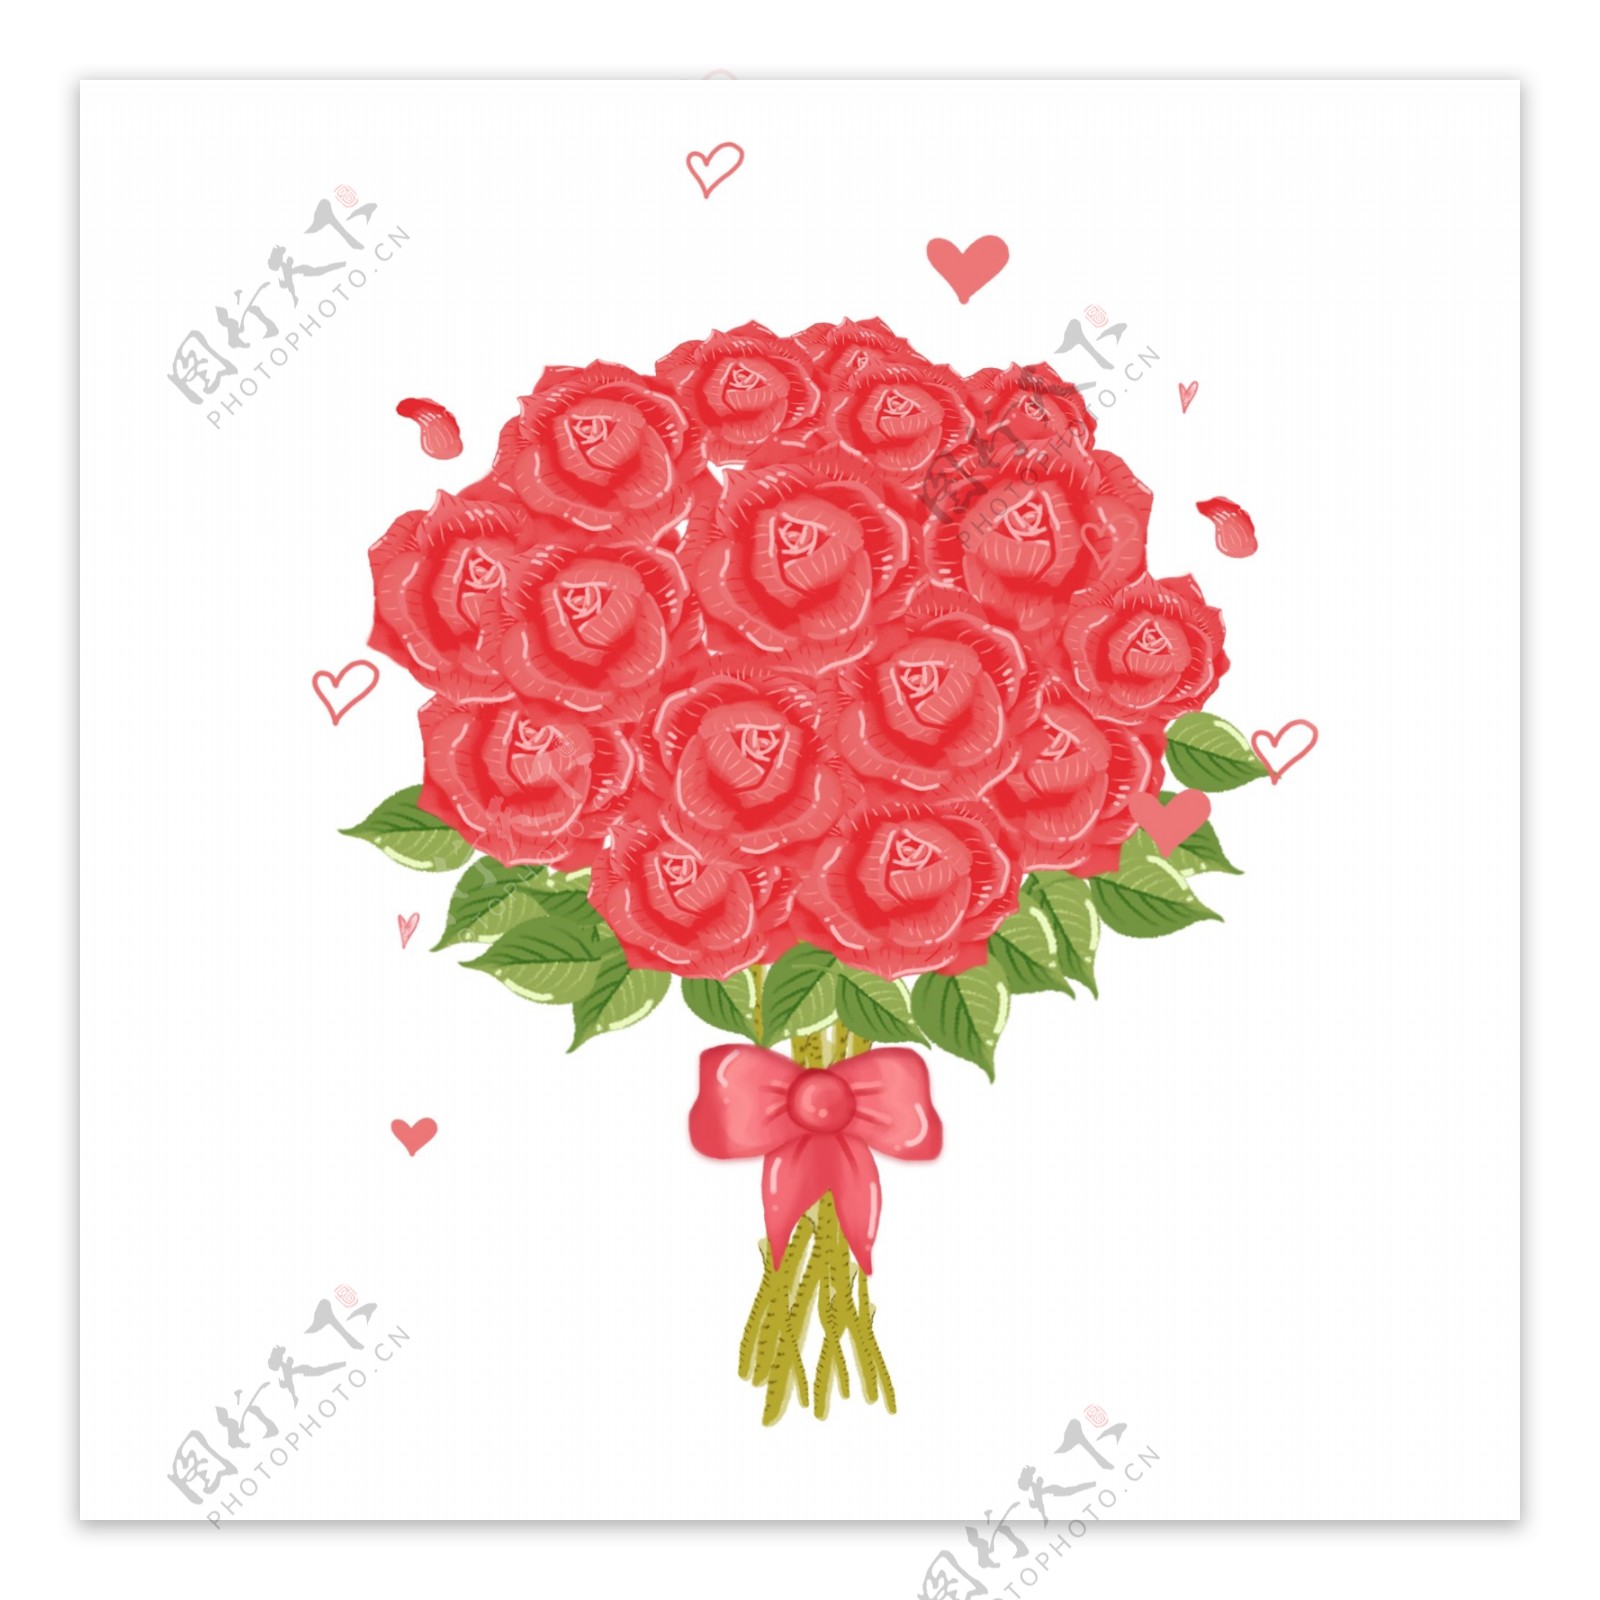 手绘浪漫玫瑰花束植物花卉花朵清新情人节